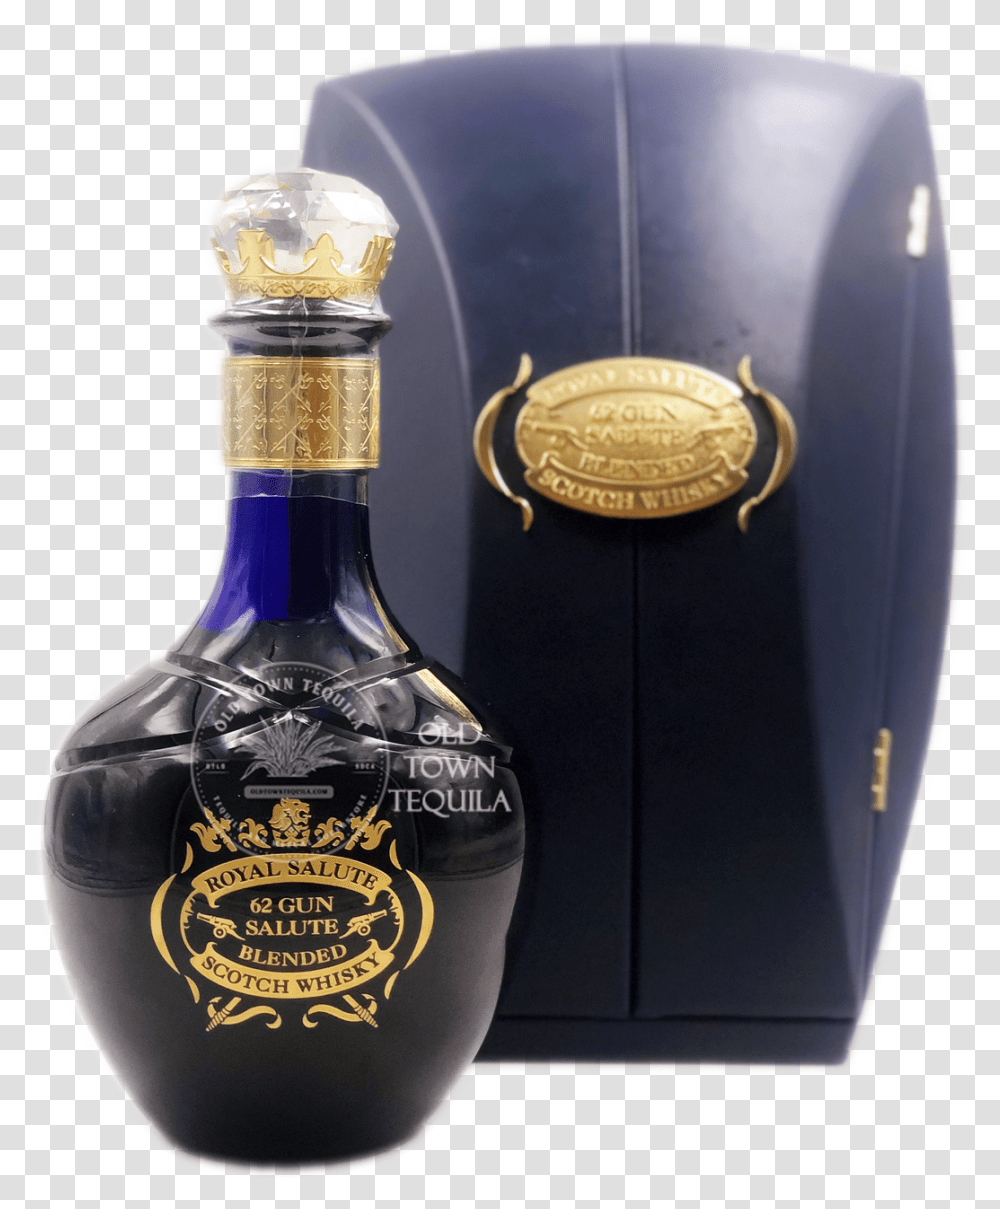 Chivas Regal Royal Salute 62 Gun Salute Scotch Whisky, Liquor, Alcohol, Beverage, Bottle Transparent Png